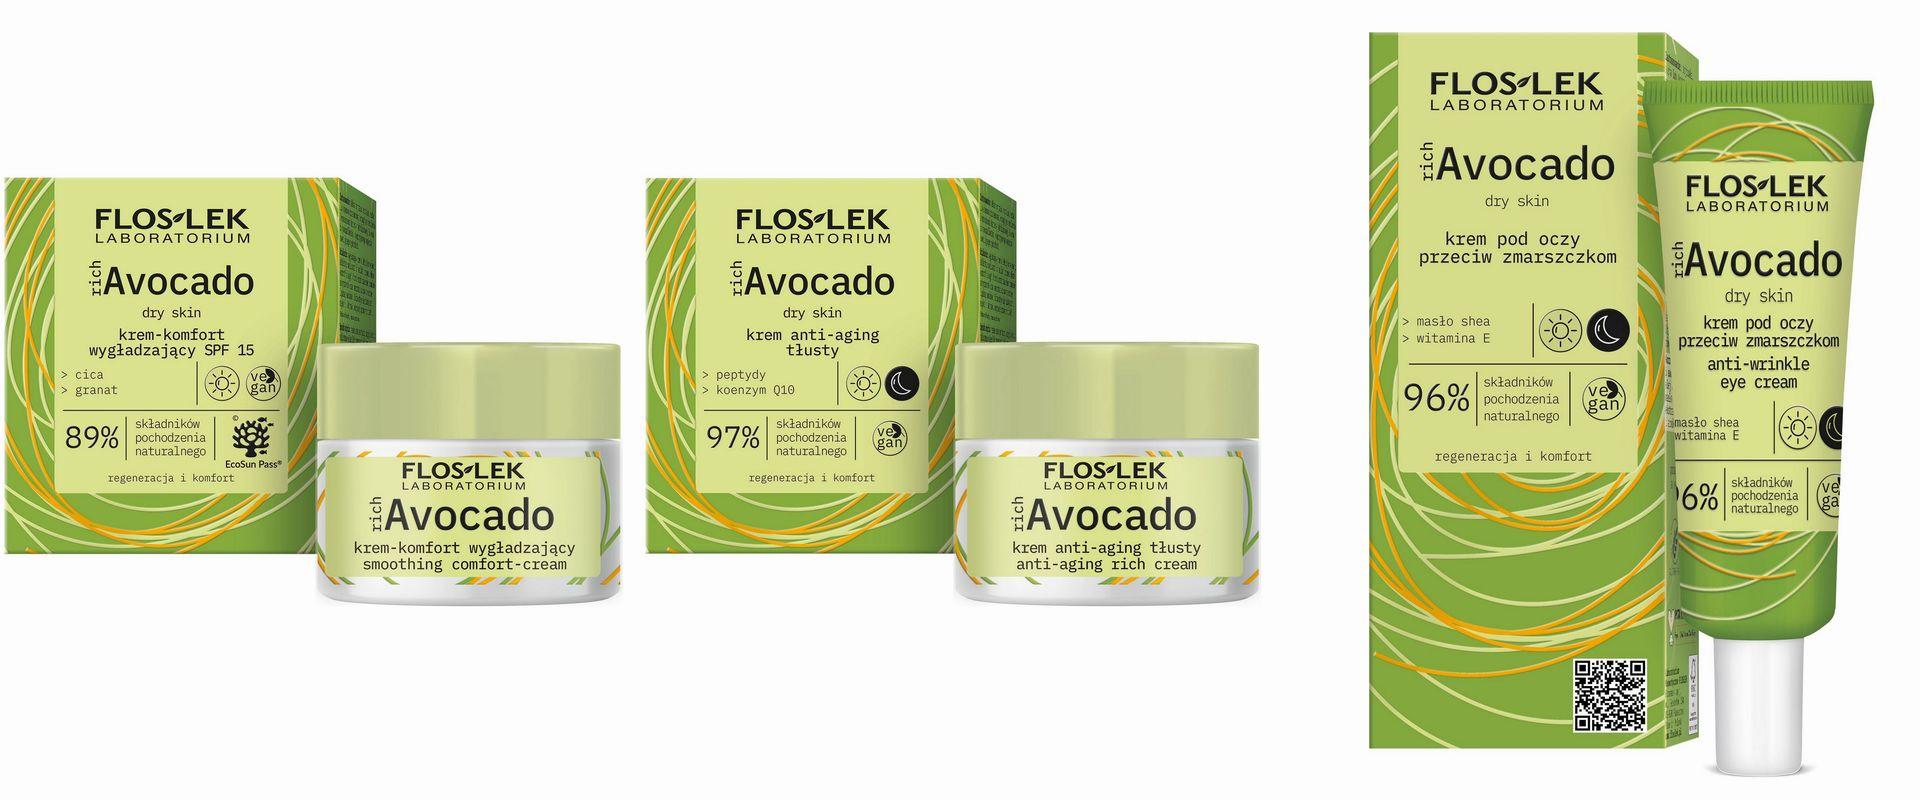 richAvocado - nowa linia kosmetyków Floslek na pomoc suchej skórze